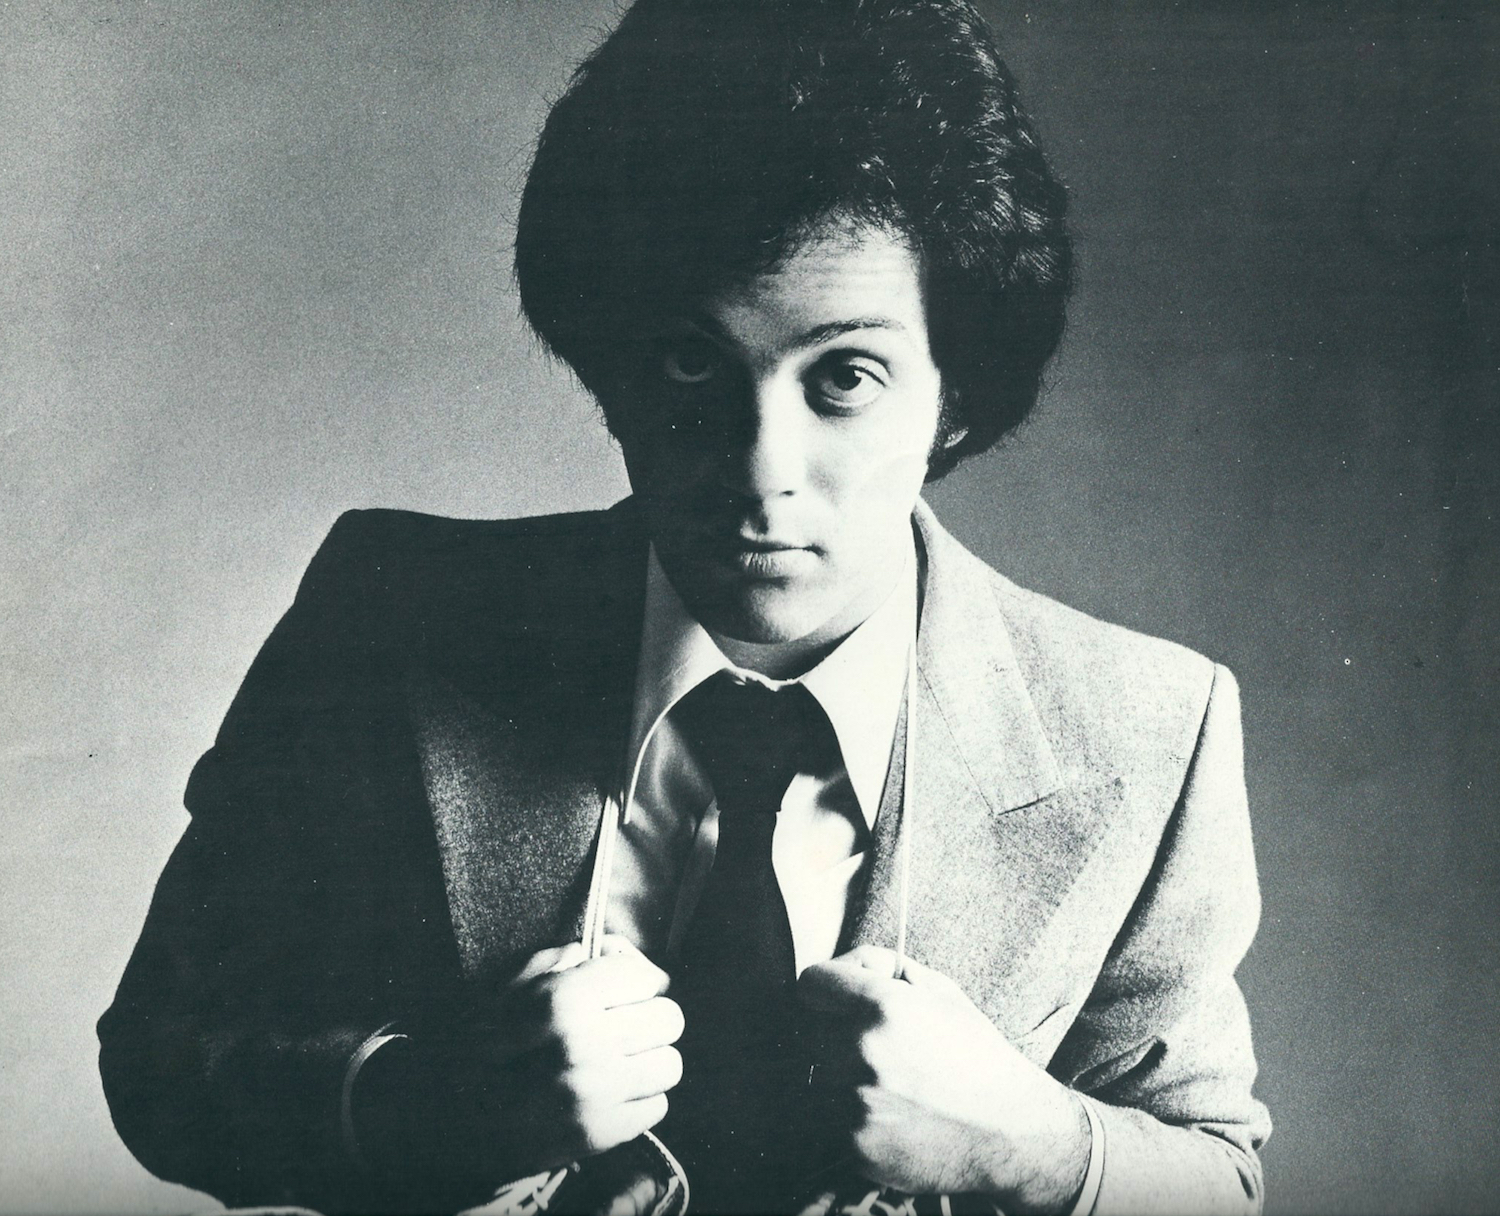 Billy Joel The Stranger 1977.